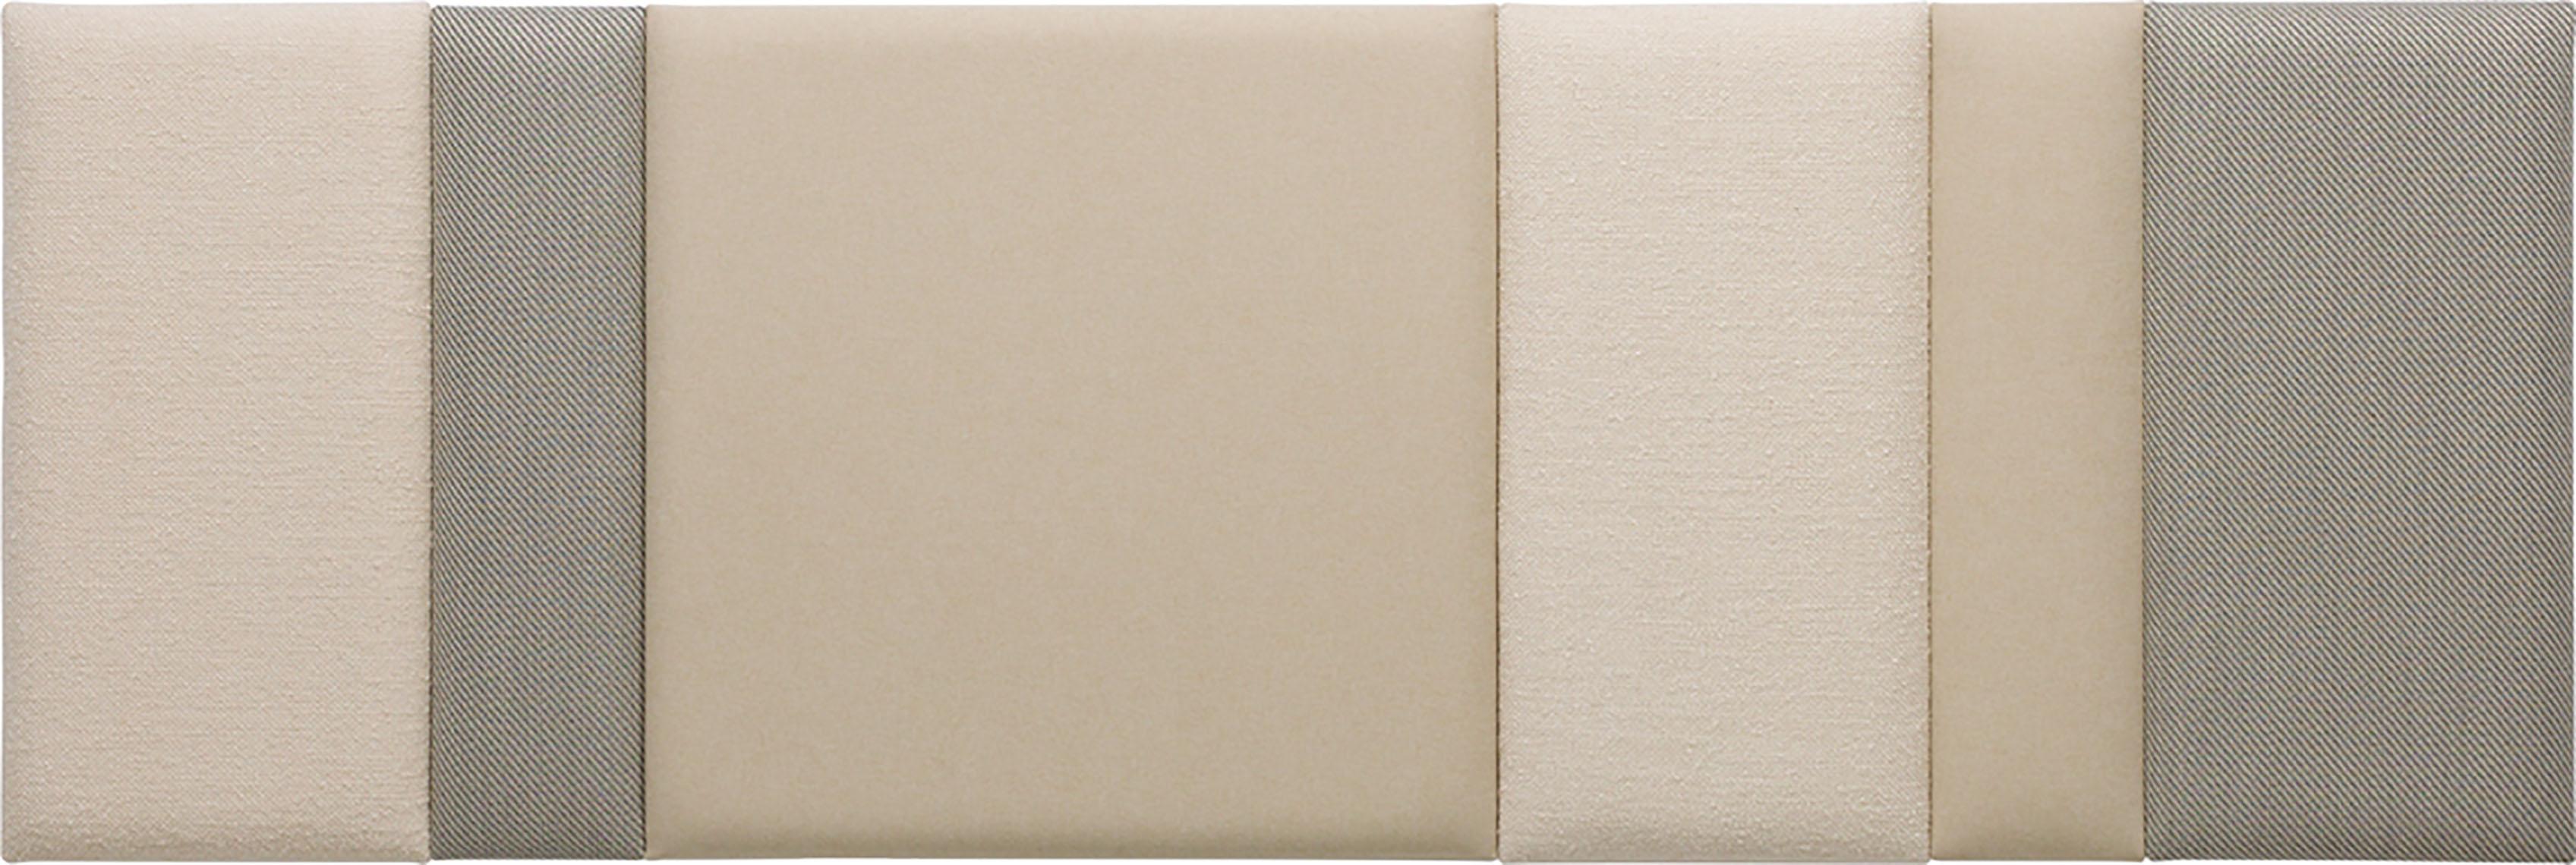 Conjunto de paneles regulares tapizados Soform grandes en beige